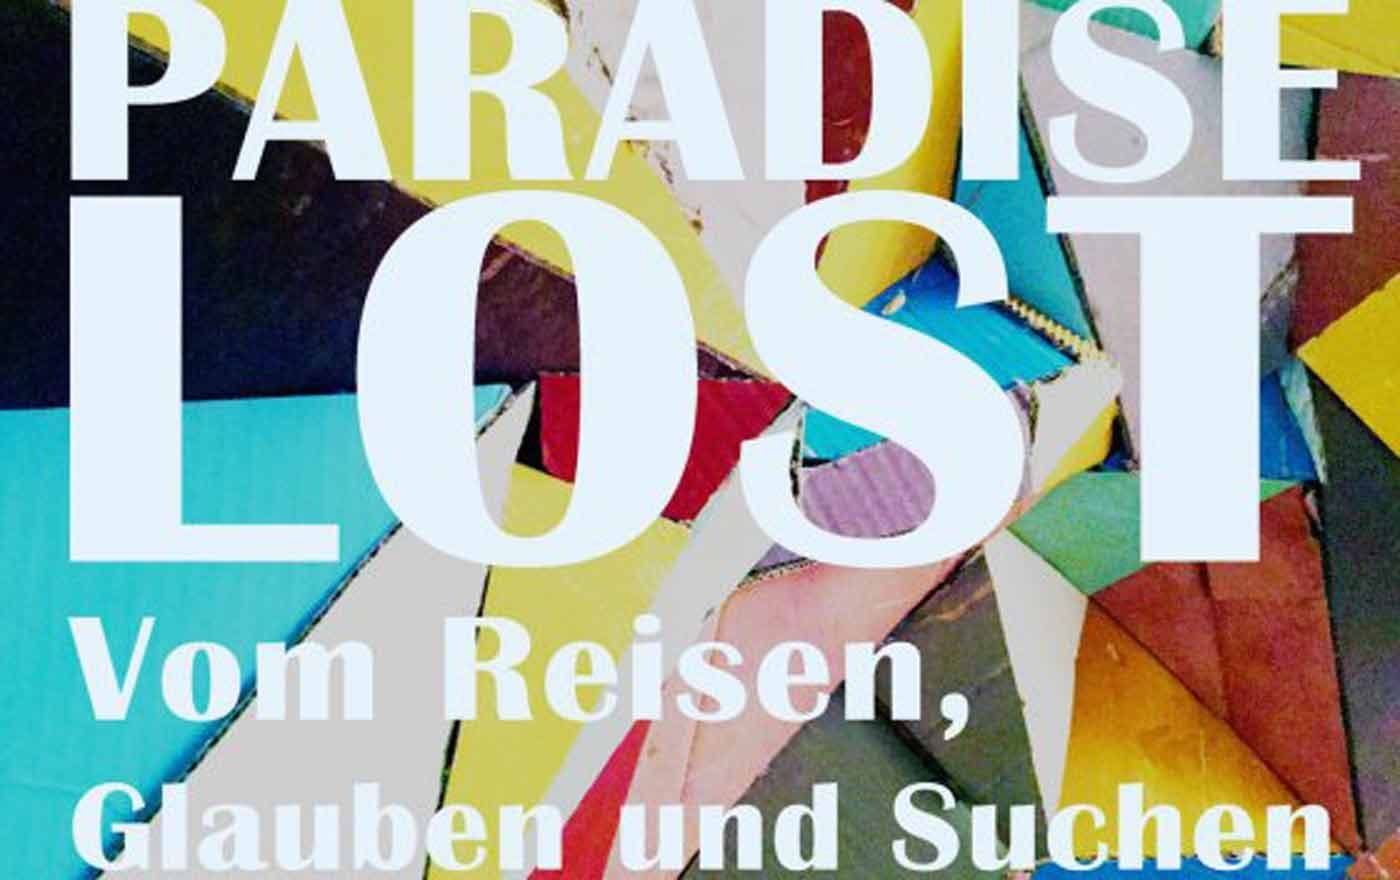 Unterschiedliche Facetten des Unterwegsseins entfaltet das Diözesanmuseum Fresach in der Ausstellung "Paradise Lost". Foto: Evangelisches Forum Fresach